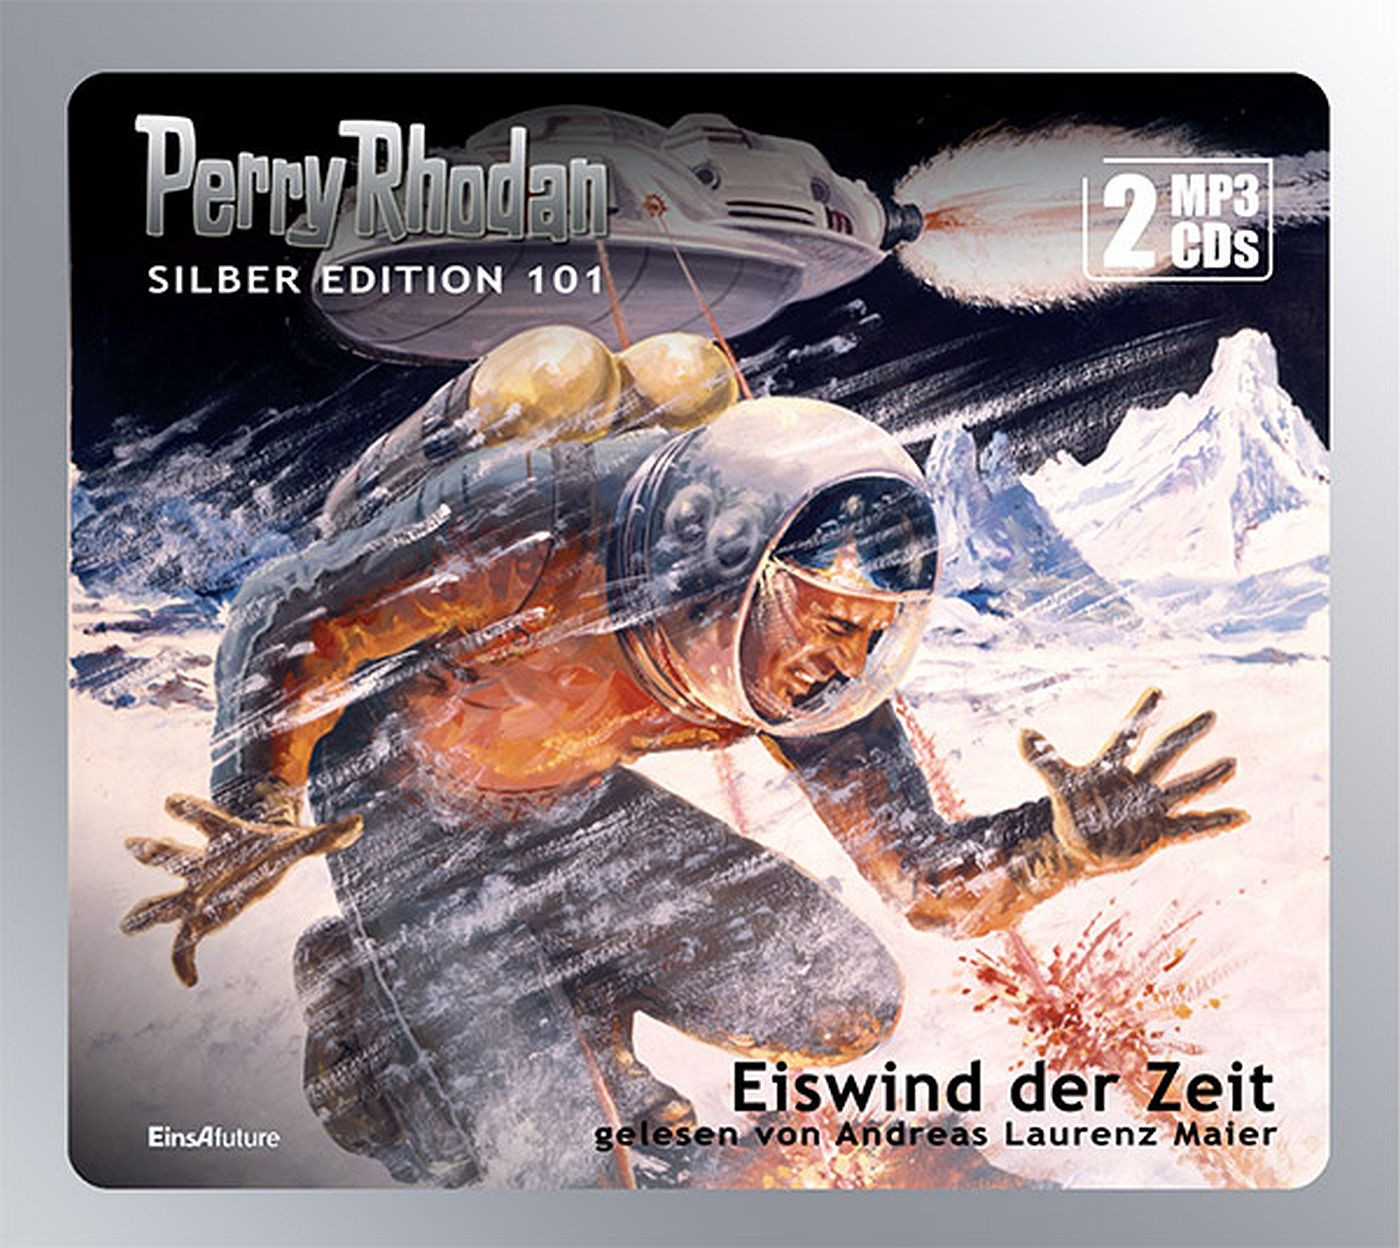 Perry Rhodan Silber Edition 101 Eiswind der Zeit (2 mp3-CDs)